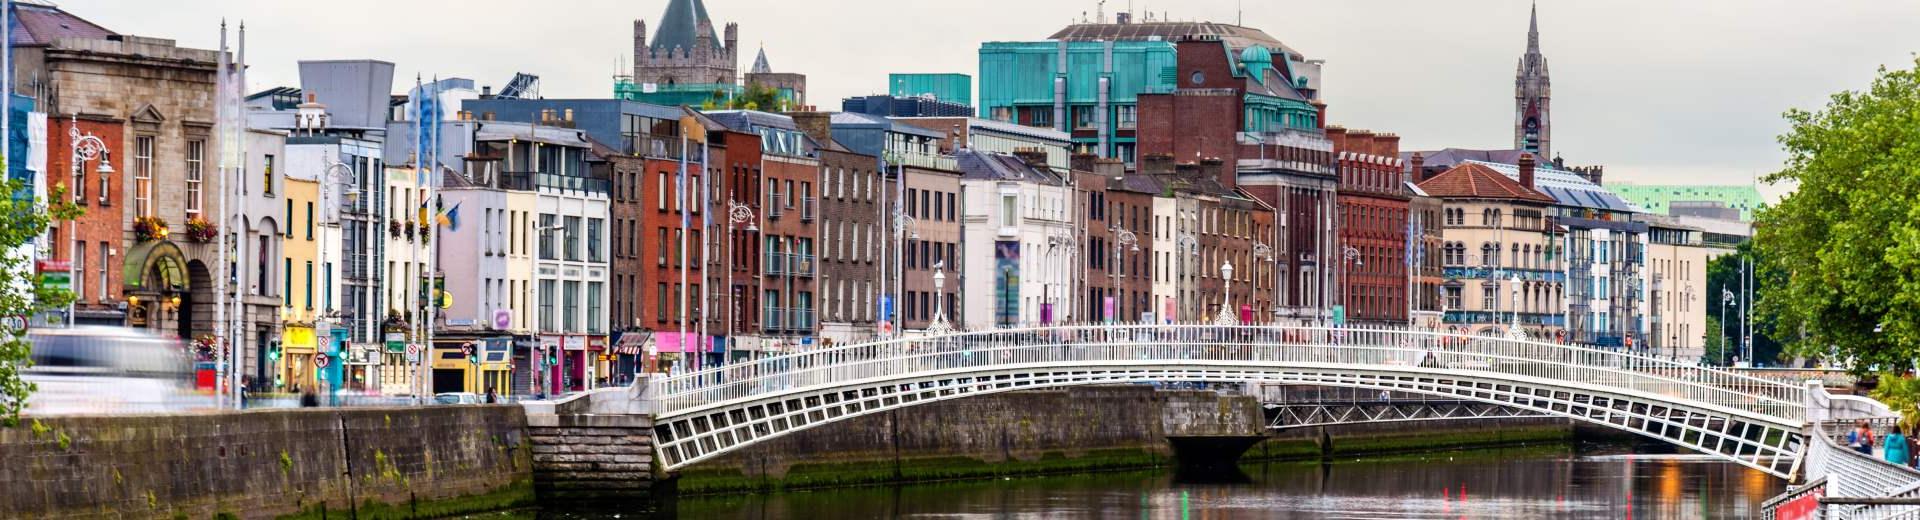 Noclegi i apartamenty wakacyjne w Dublinie - Casamundo